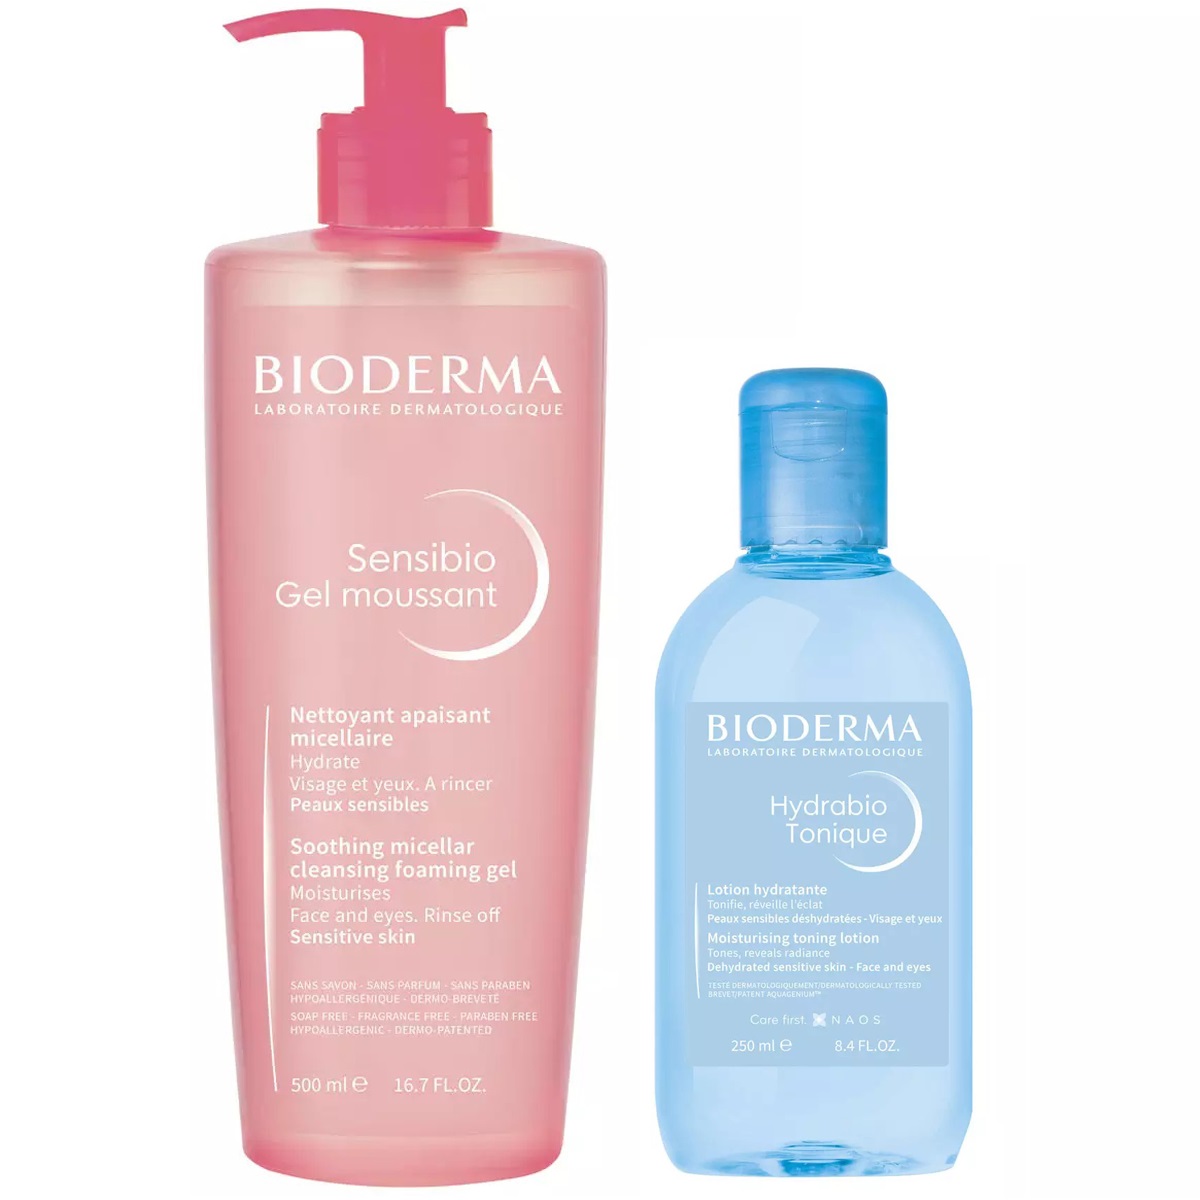 Bioderma Набор для очищения и увлажнения кожи: лосьон, 250 мл + гель, 500 мл (Bioderma, Sensibio) лосьон для лица bioderma hydrabio гидрабио 250 мл тонизирующий увлажняющий